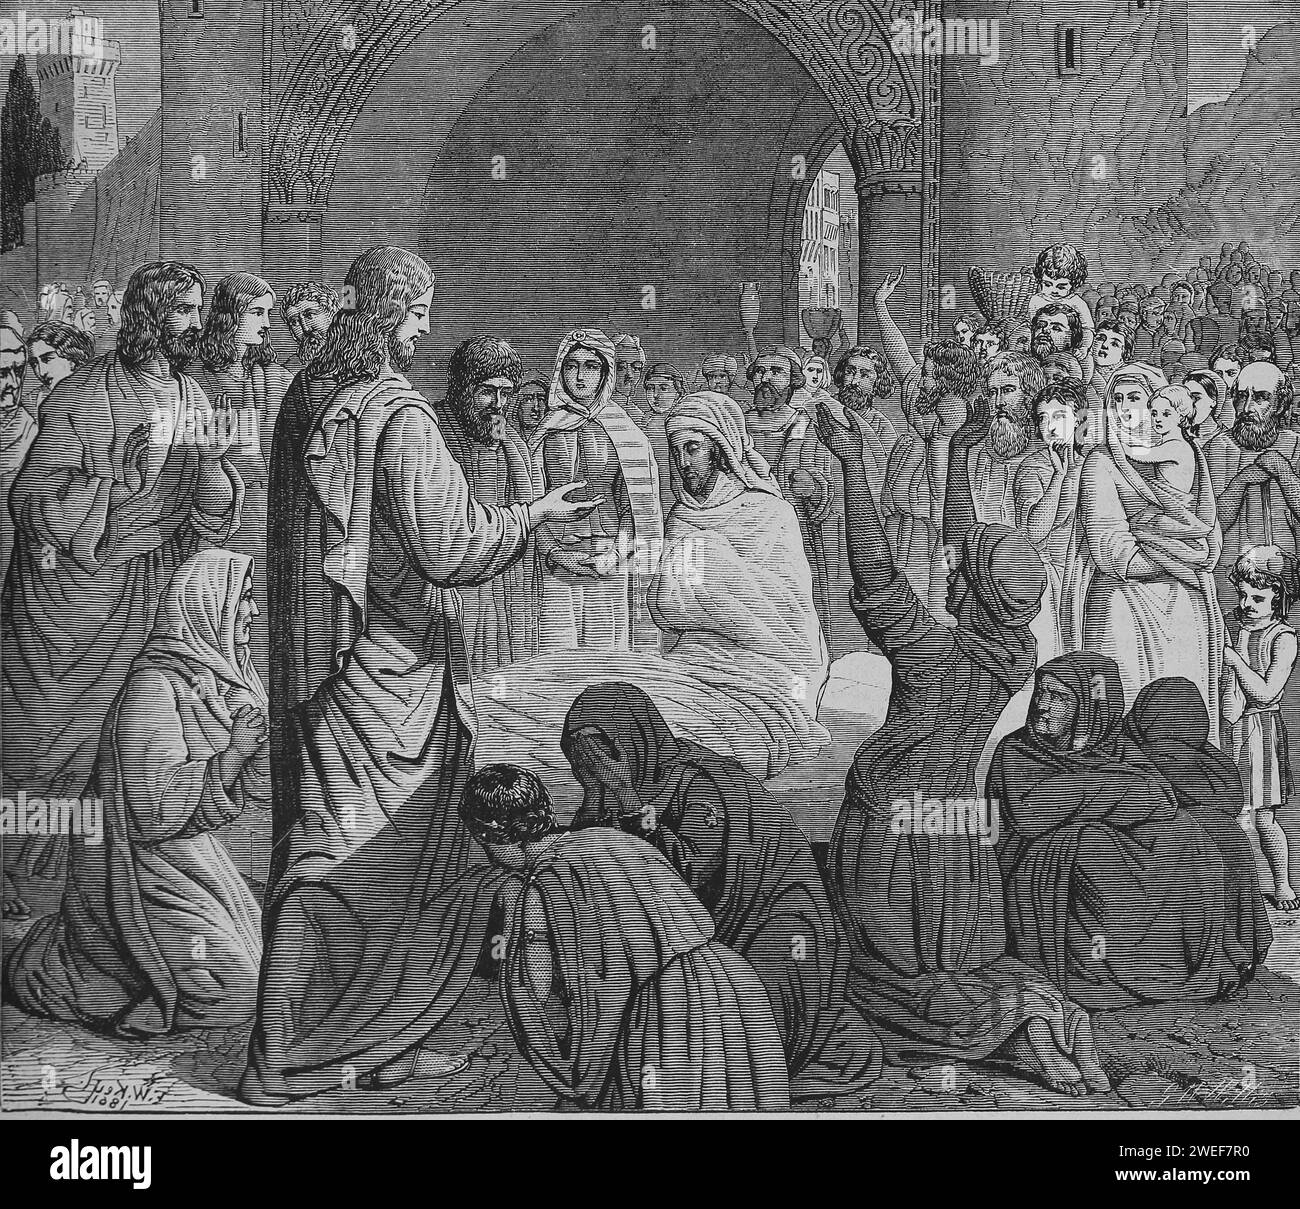 Christus erweckt den Sohn der Witwe. Neues Testament. Lukas 7:14 Uhr. Stich, 19. Jahrhundert. Heilige Bibel. Stockfoto